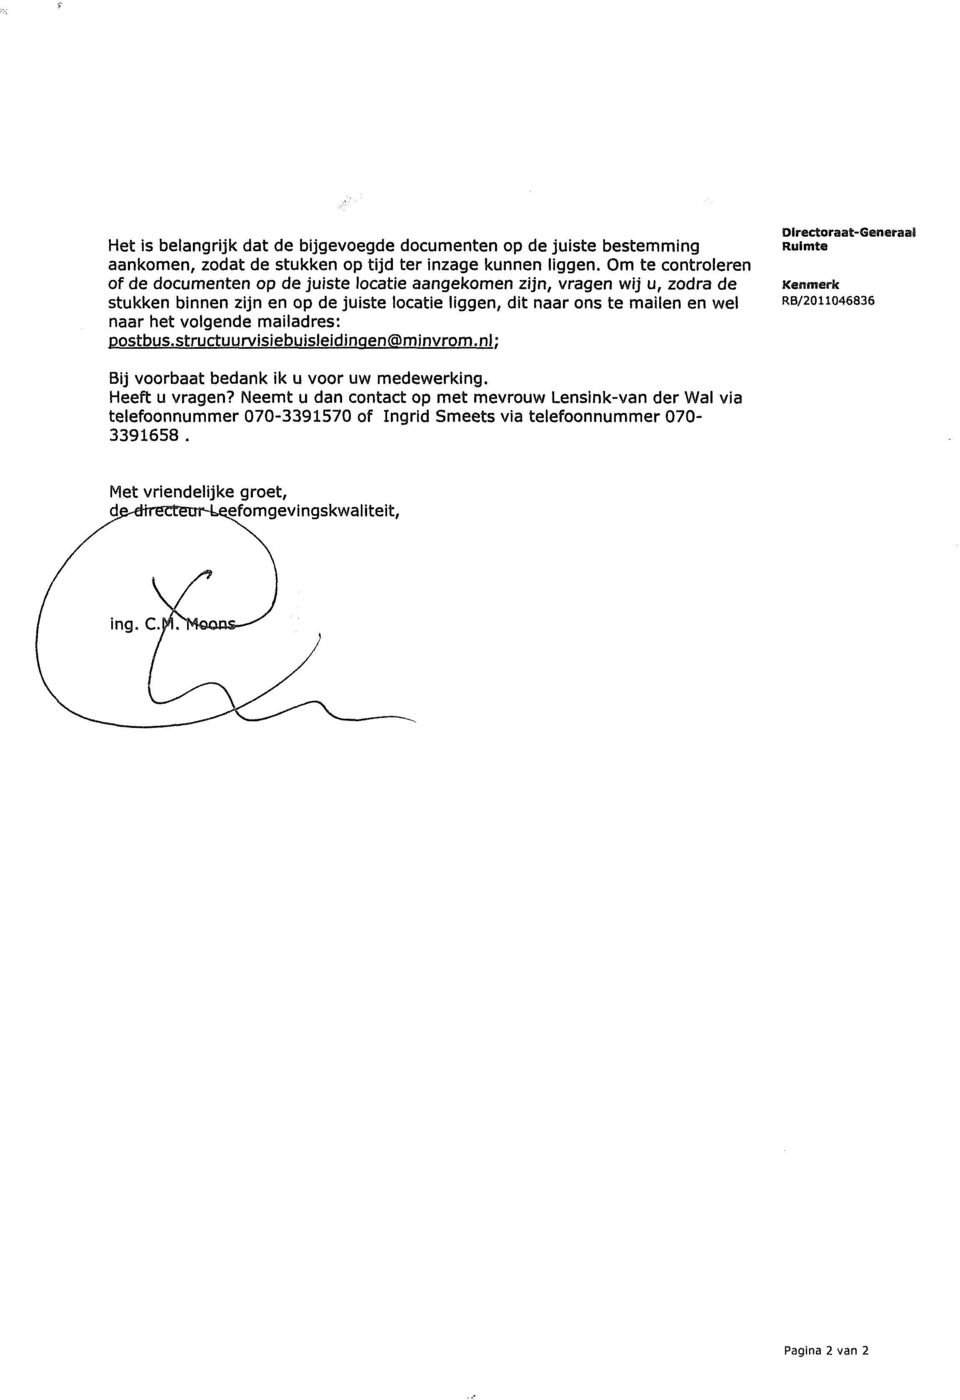 naar het volgende mailadres: Postbus.structuurvisiebuisleidinqen@minvrom.nl; Directoraat-Generaai Ruimte Kenmerk RB/2011046836 Bij voorbaat bedank ik u voor uw medewerking.